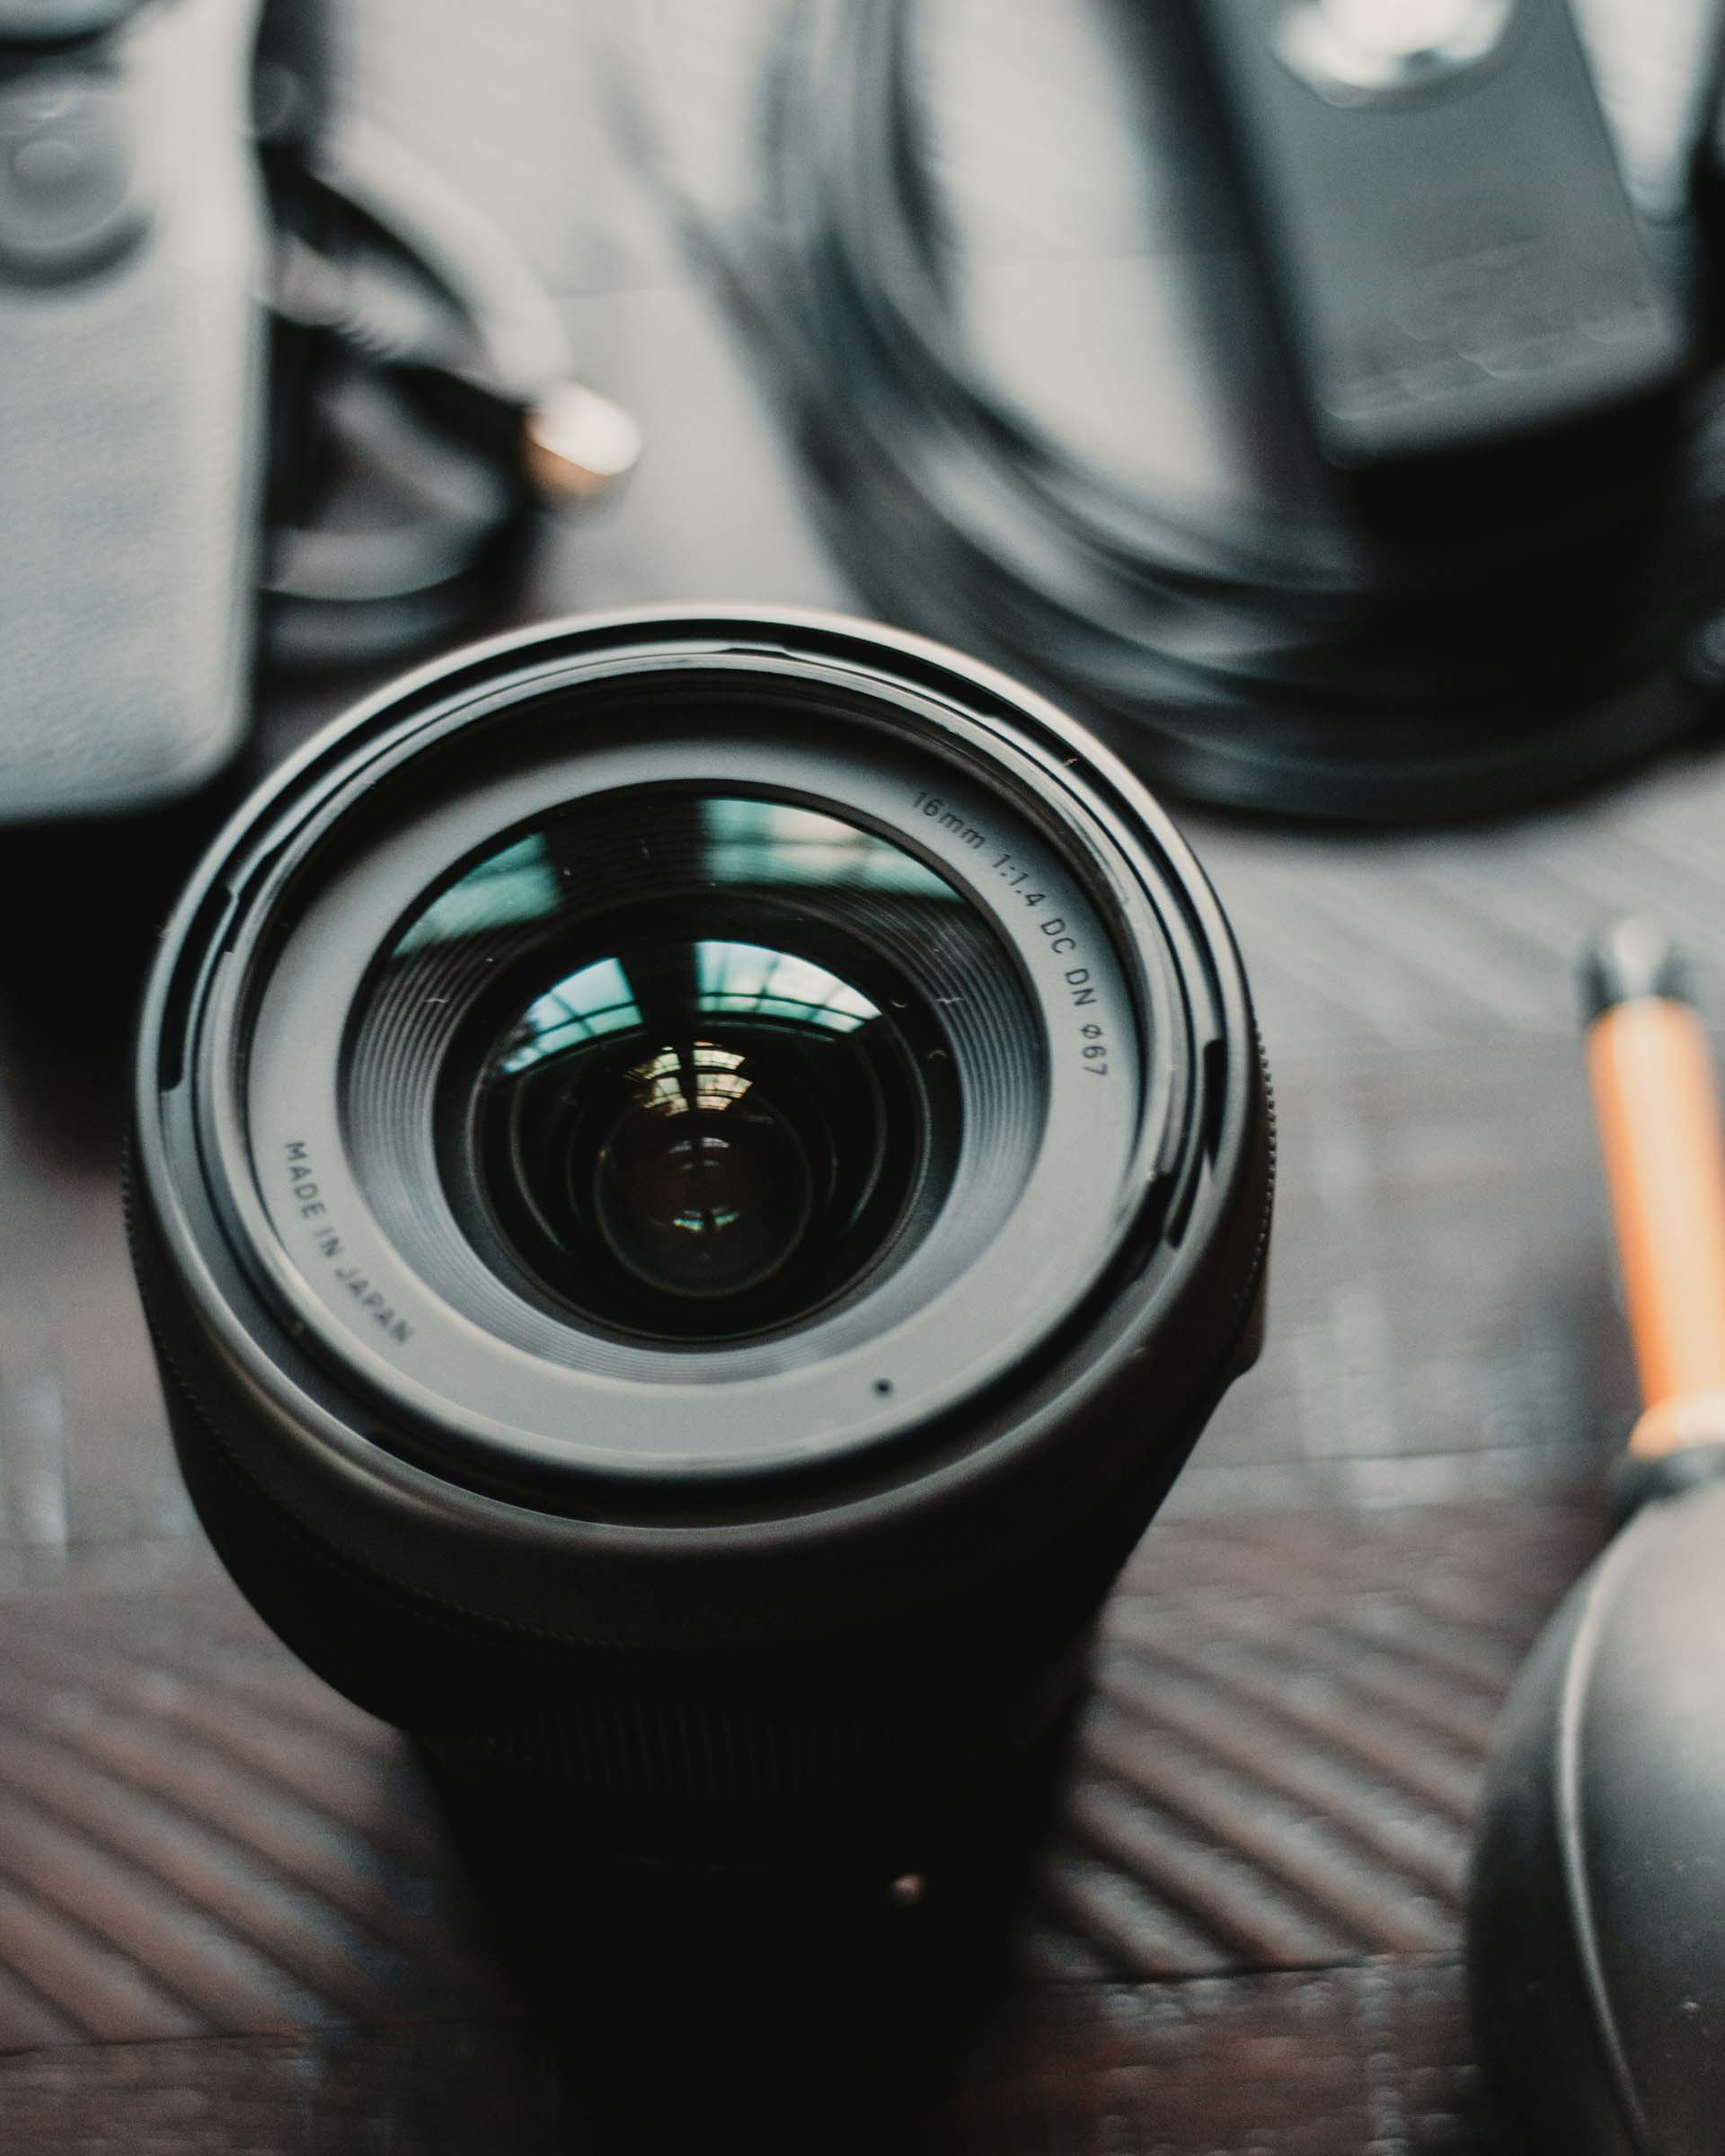 image of a camera lens